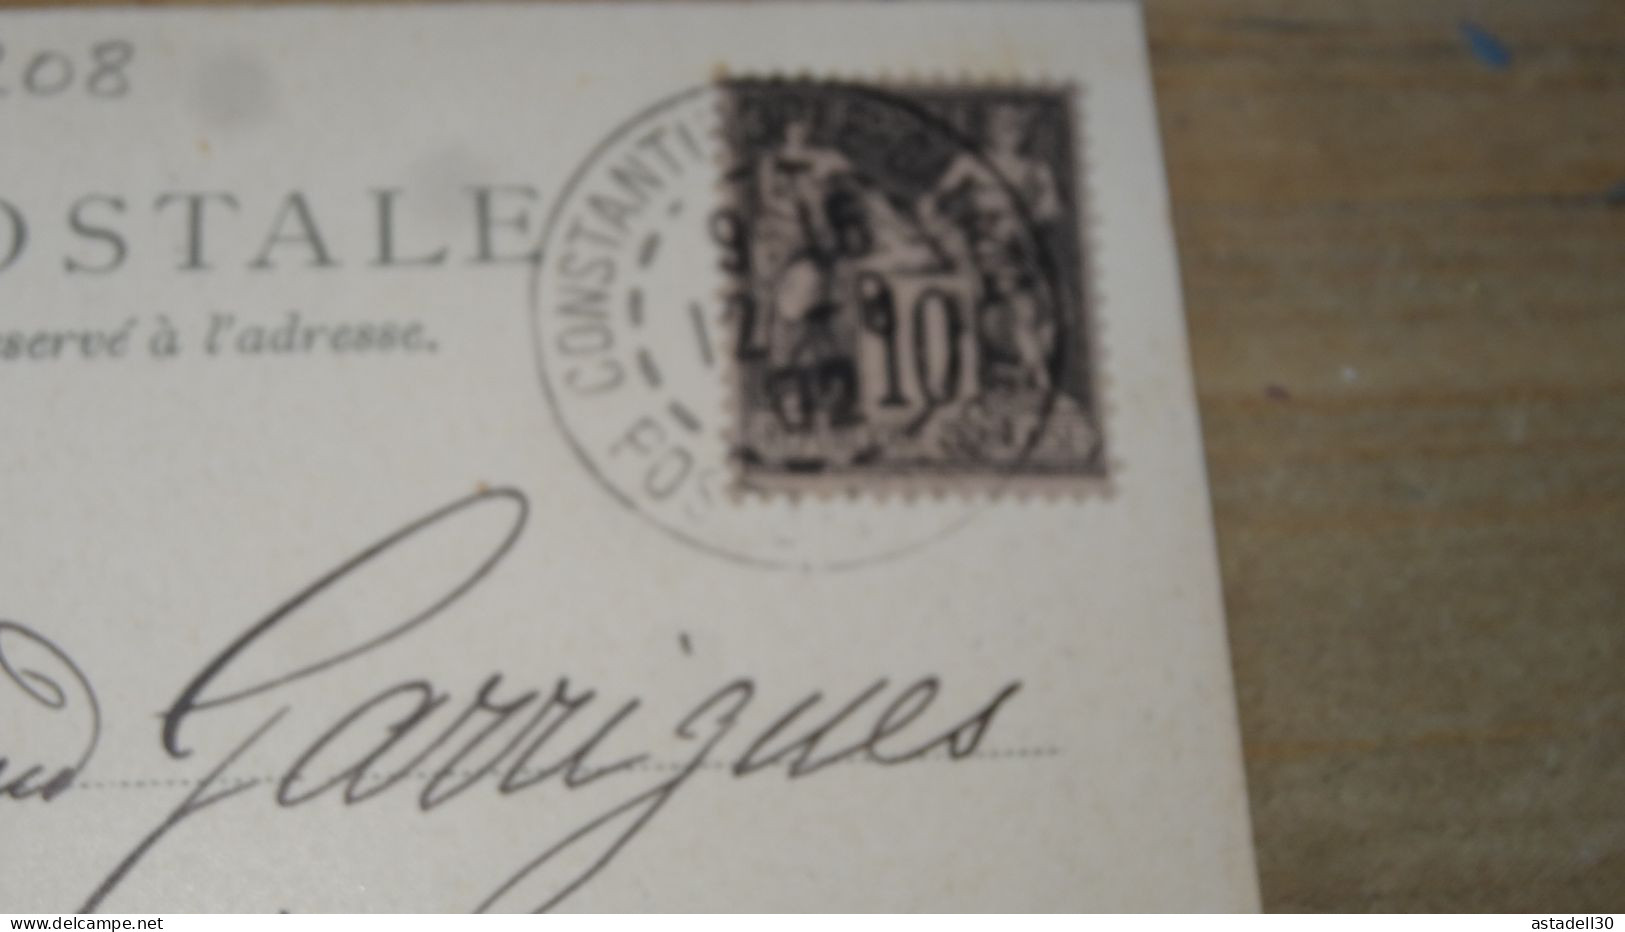 TURKIYE - TURQUIE Lot de timbres sur cartes postale  ................ 19220